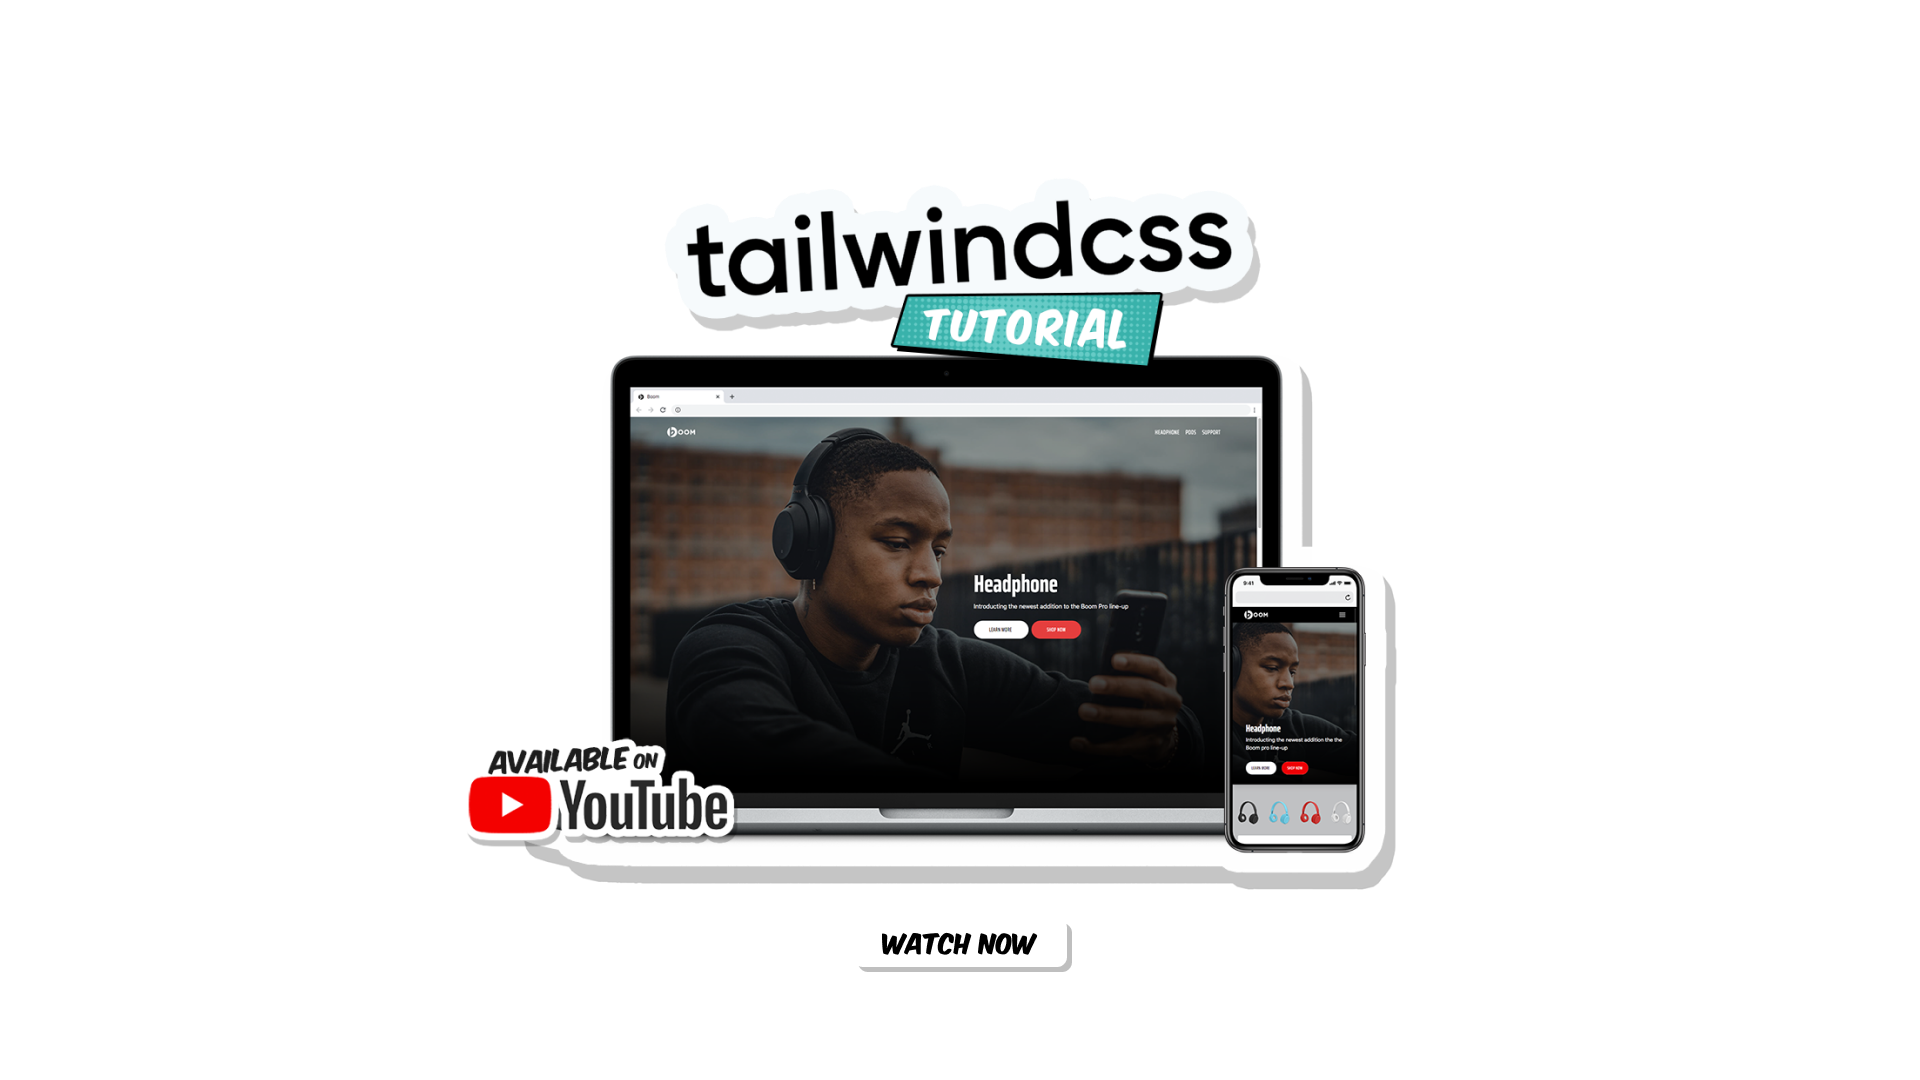 Tailwind Css Tutorial On youtube